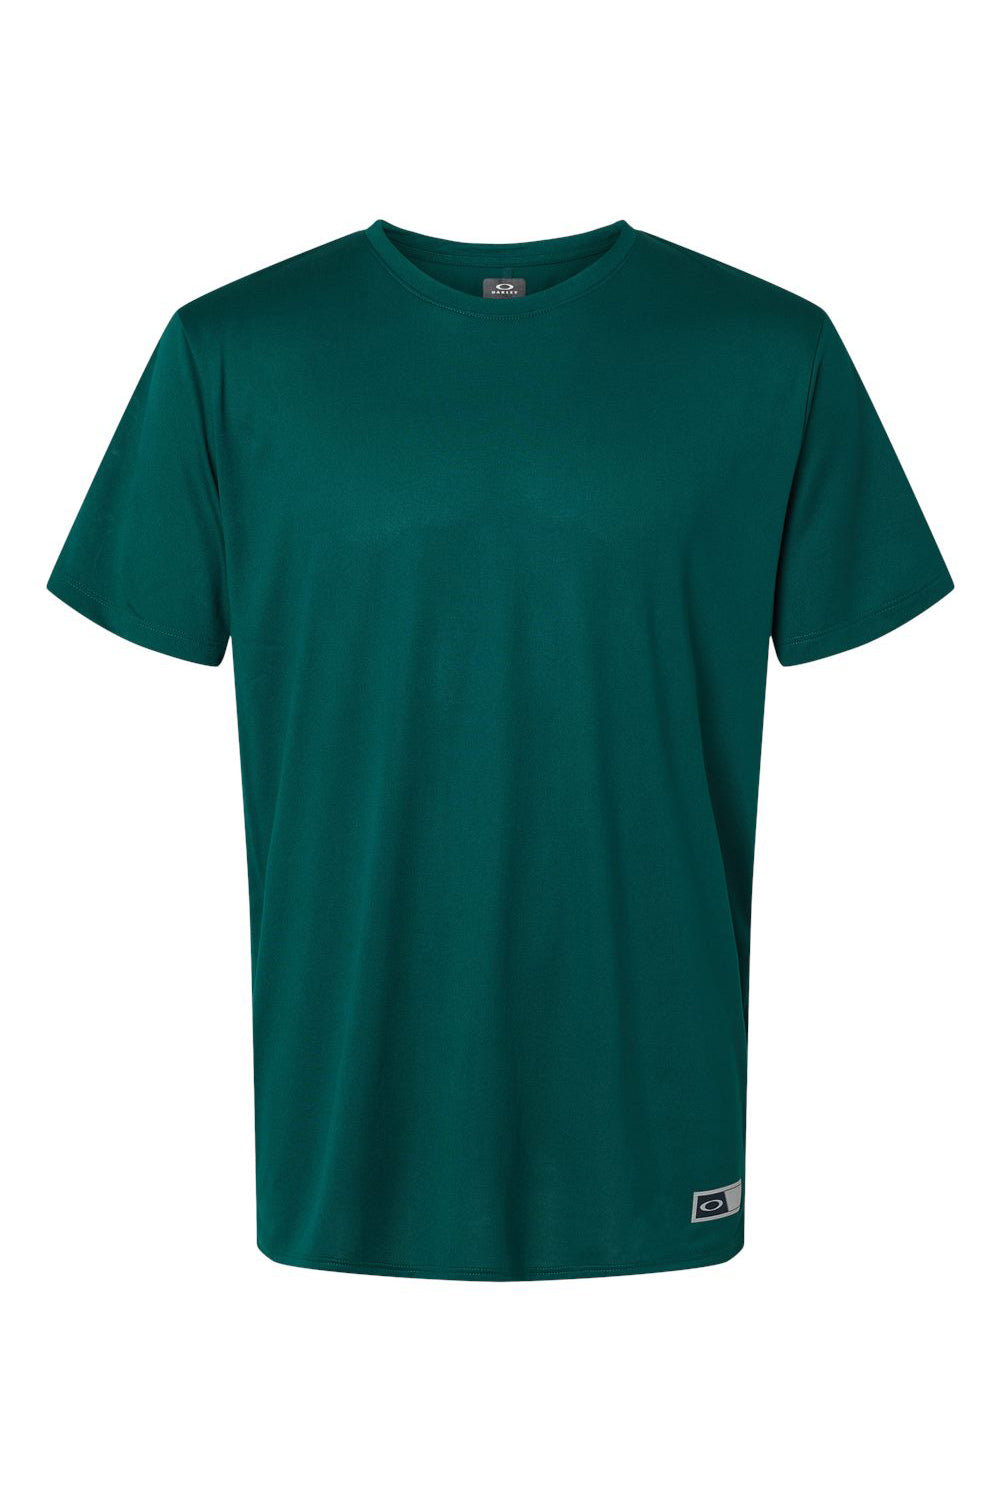 Oakley FOA402991 Mens Team Issue Hydrolix Short Sleeve Crewneck T-Shirt Team Fir Green Flat Front